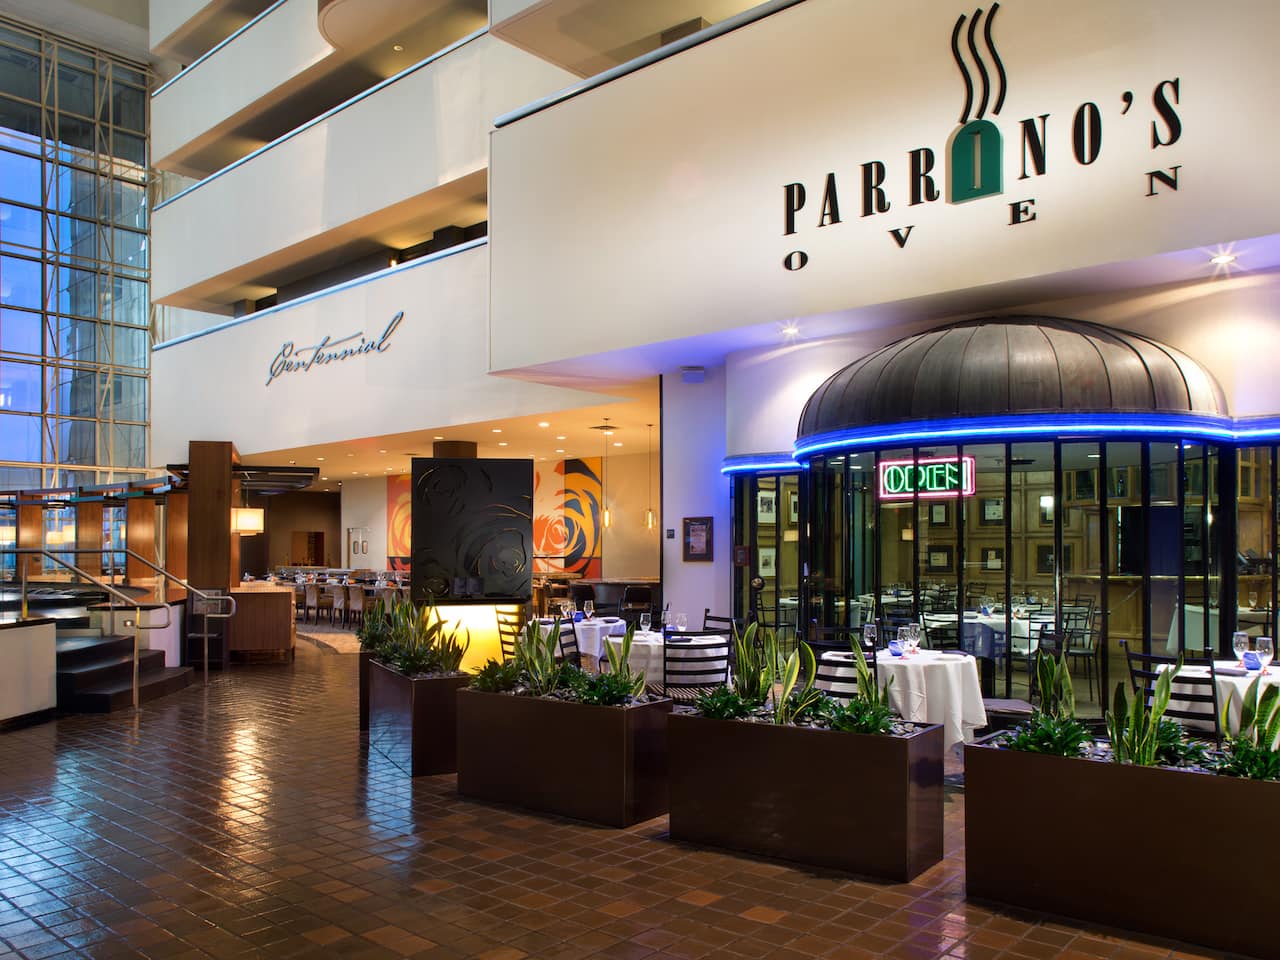 Parrino's Italian Oven at Hyatt Regency Dallas